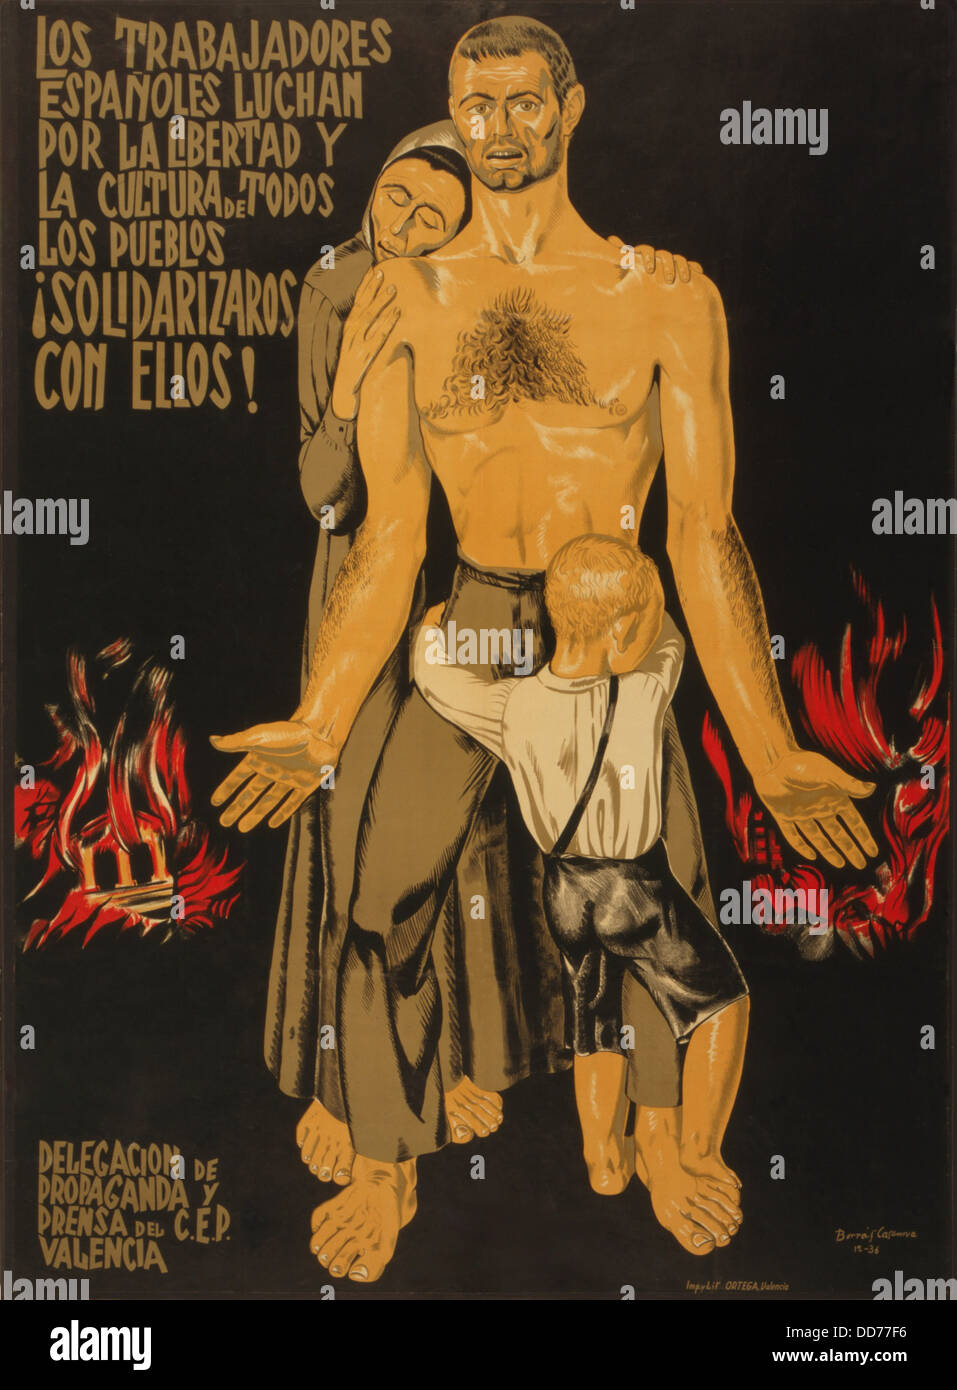 Les travailleurs espagnols se battent POUR LA LIBERTÉ ET LA CULTURE DE TOUTES LES COMMUNES. La solidarité avec eux. 1936 Guerre civile espagnole poster Banque D'Images